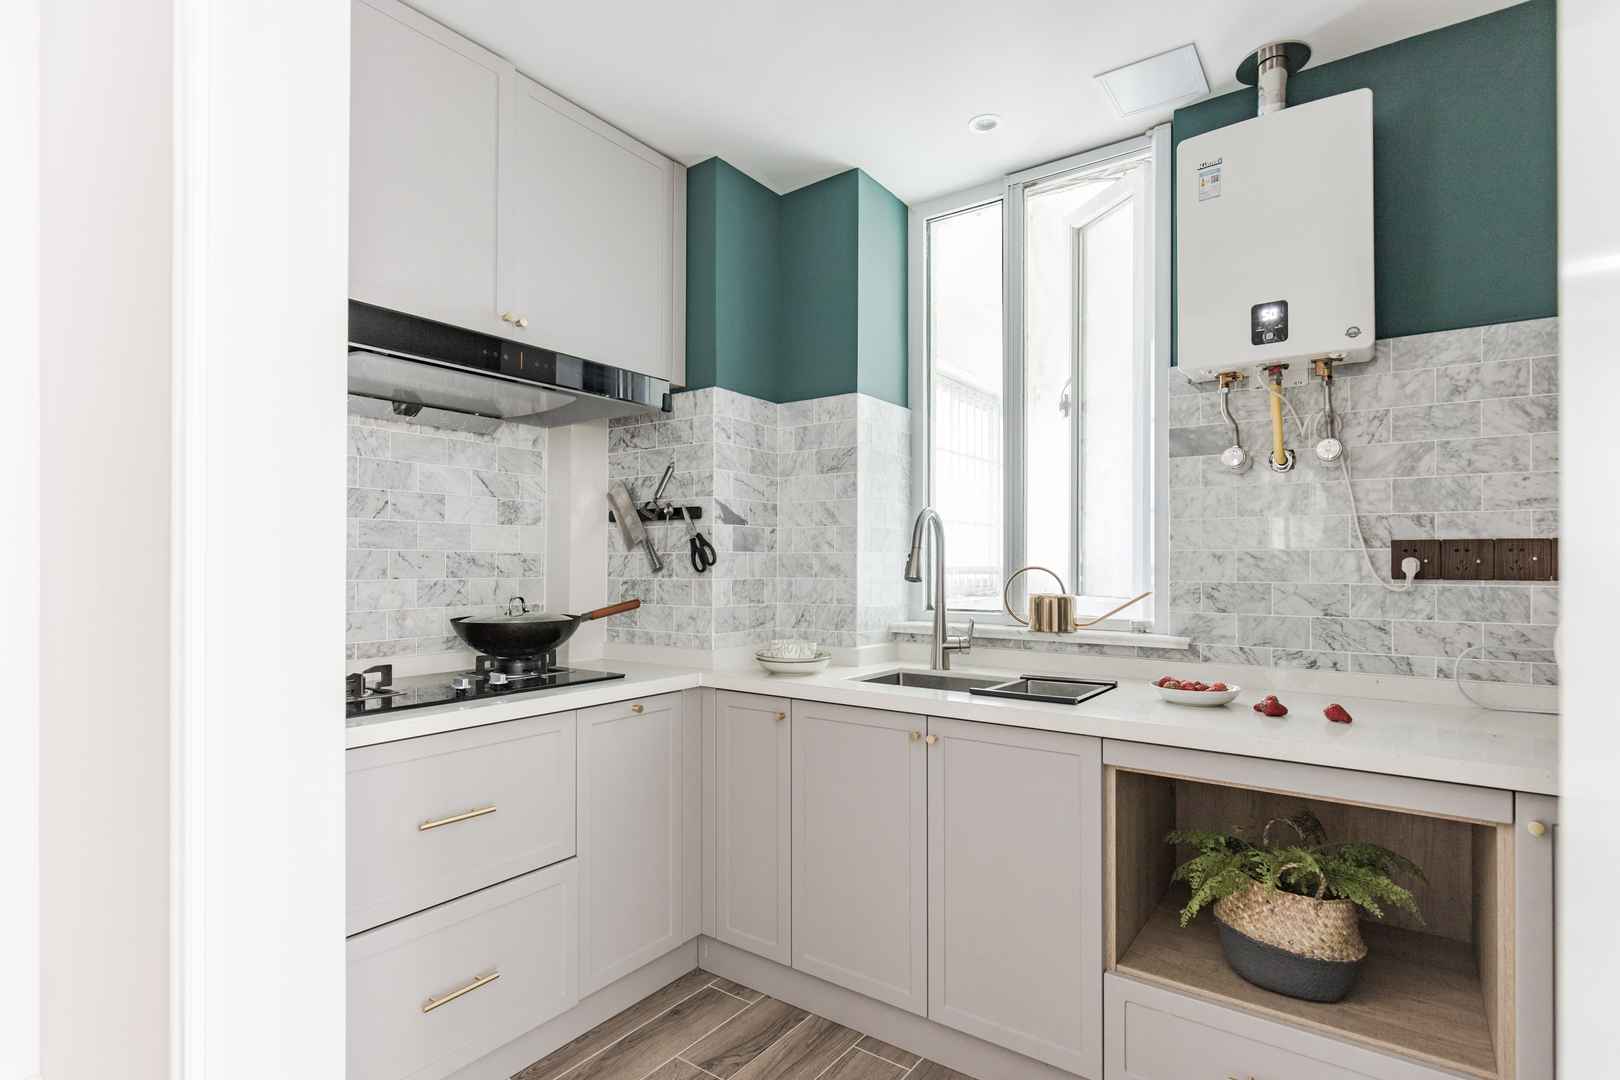 90㎡二居房子厨房装修北欧风格效果图